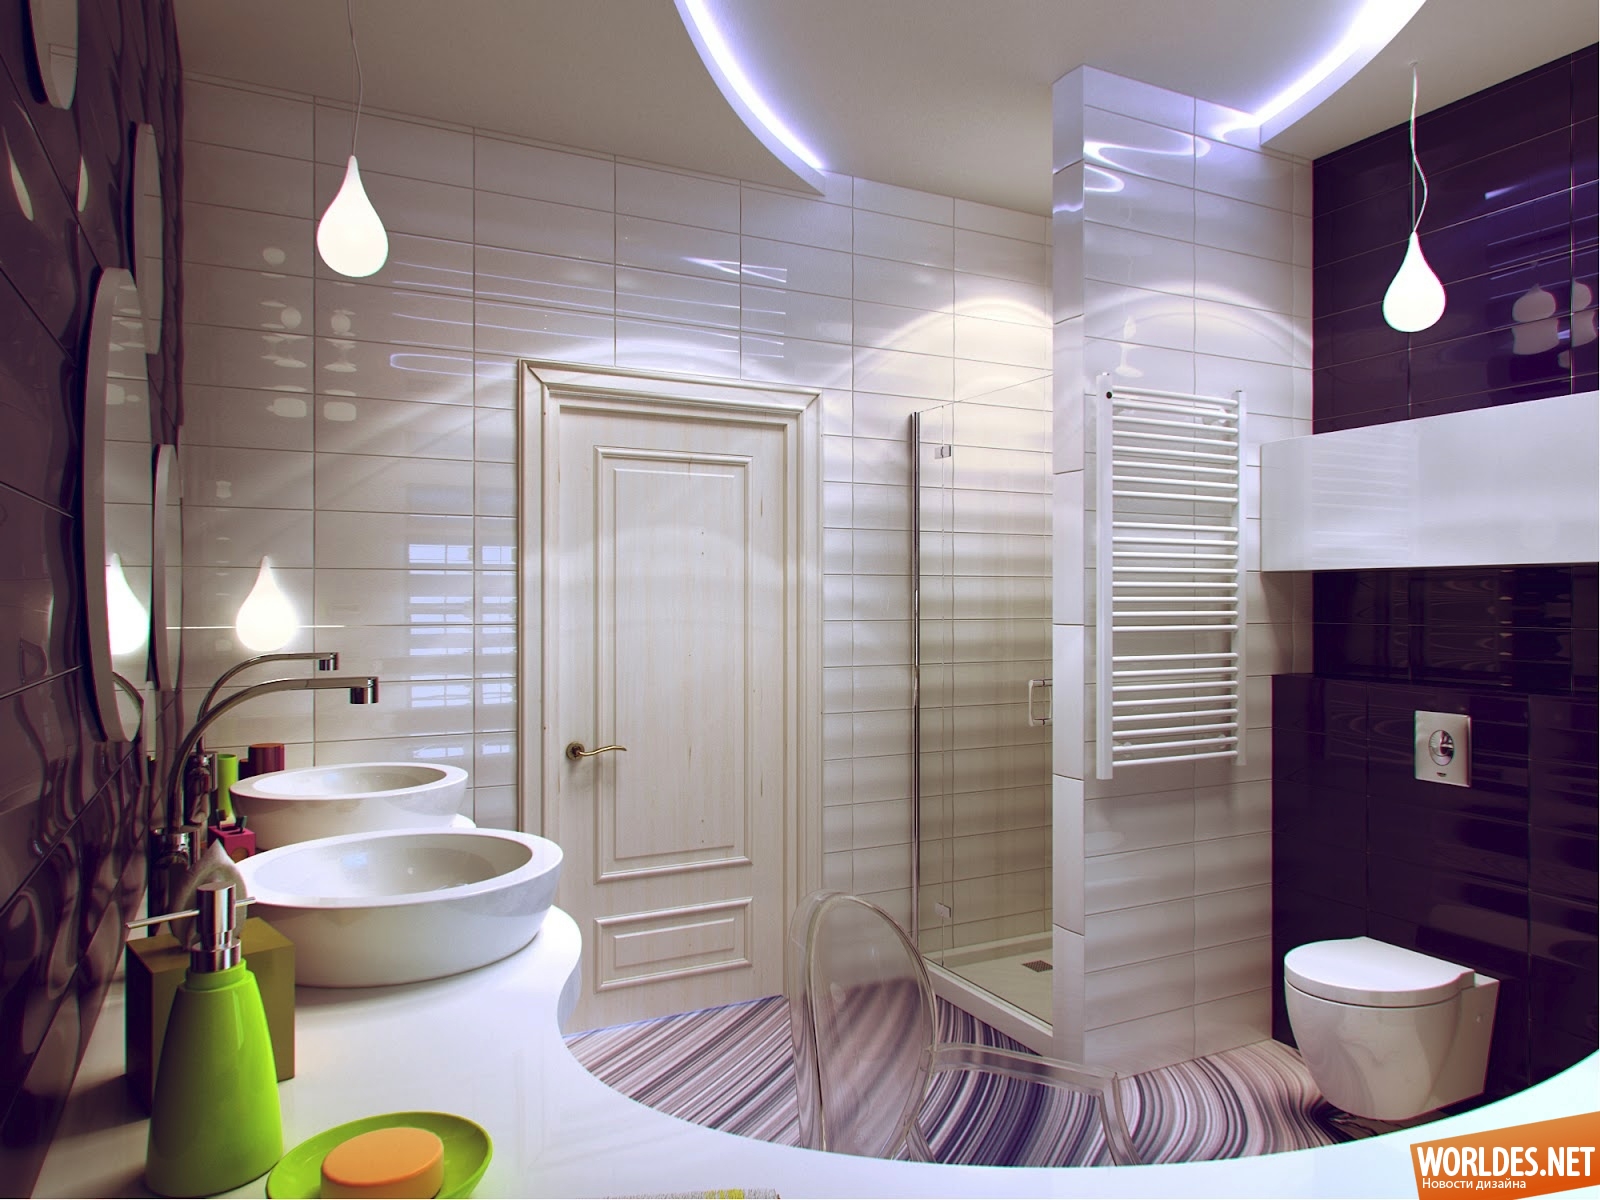 дизайн ванных комнат, дизайн интерьера для ванной комнаты, ванные комнаты, маленькие ванные комнаты, интерьер маленьких ванных комнат